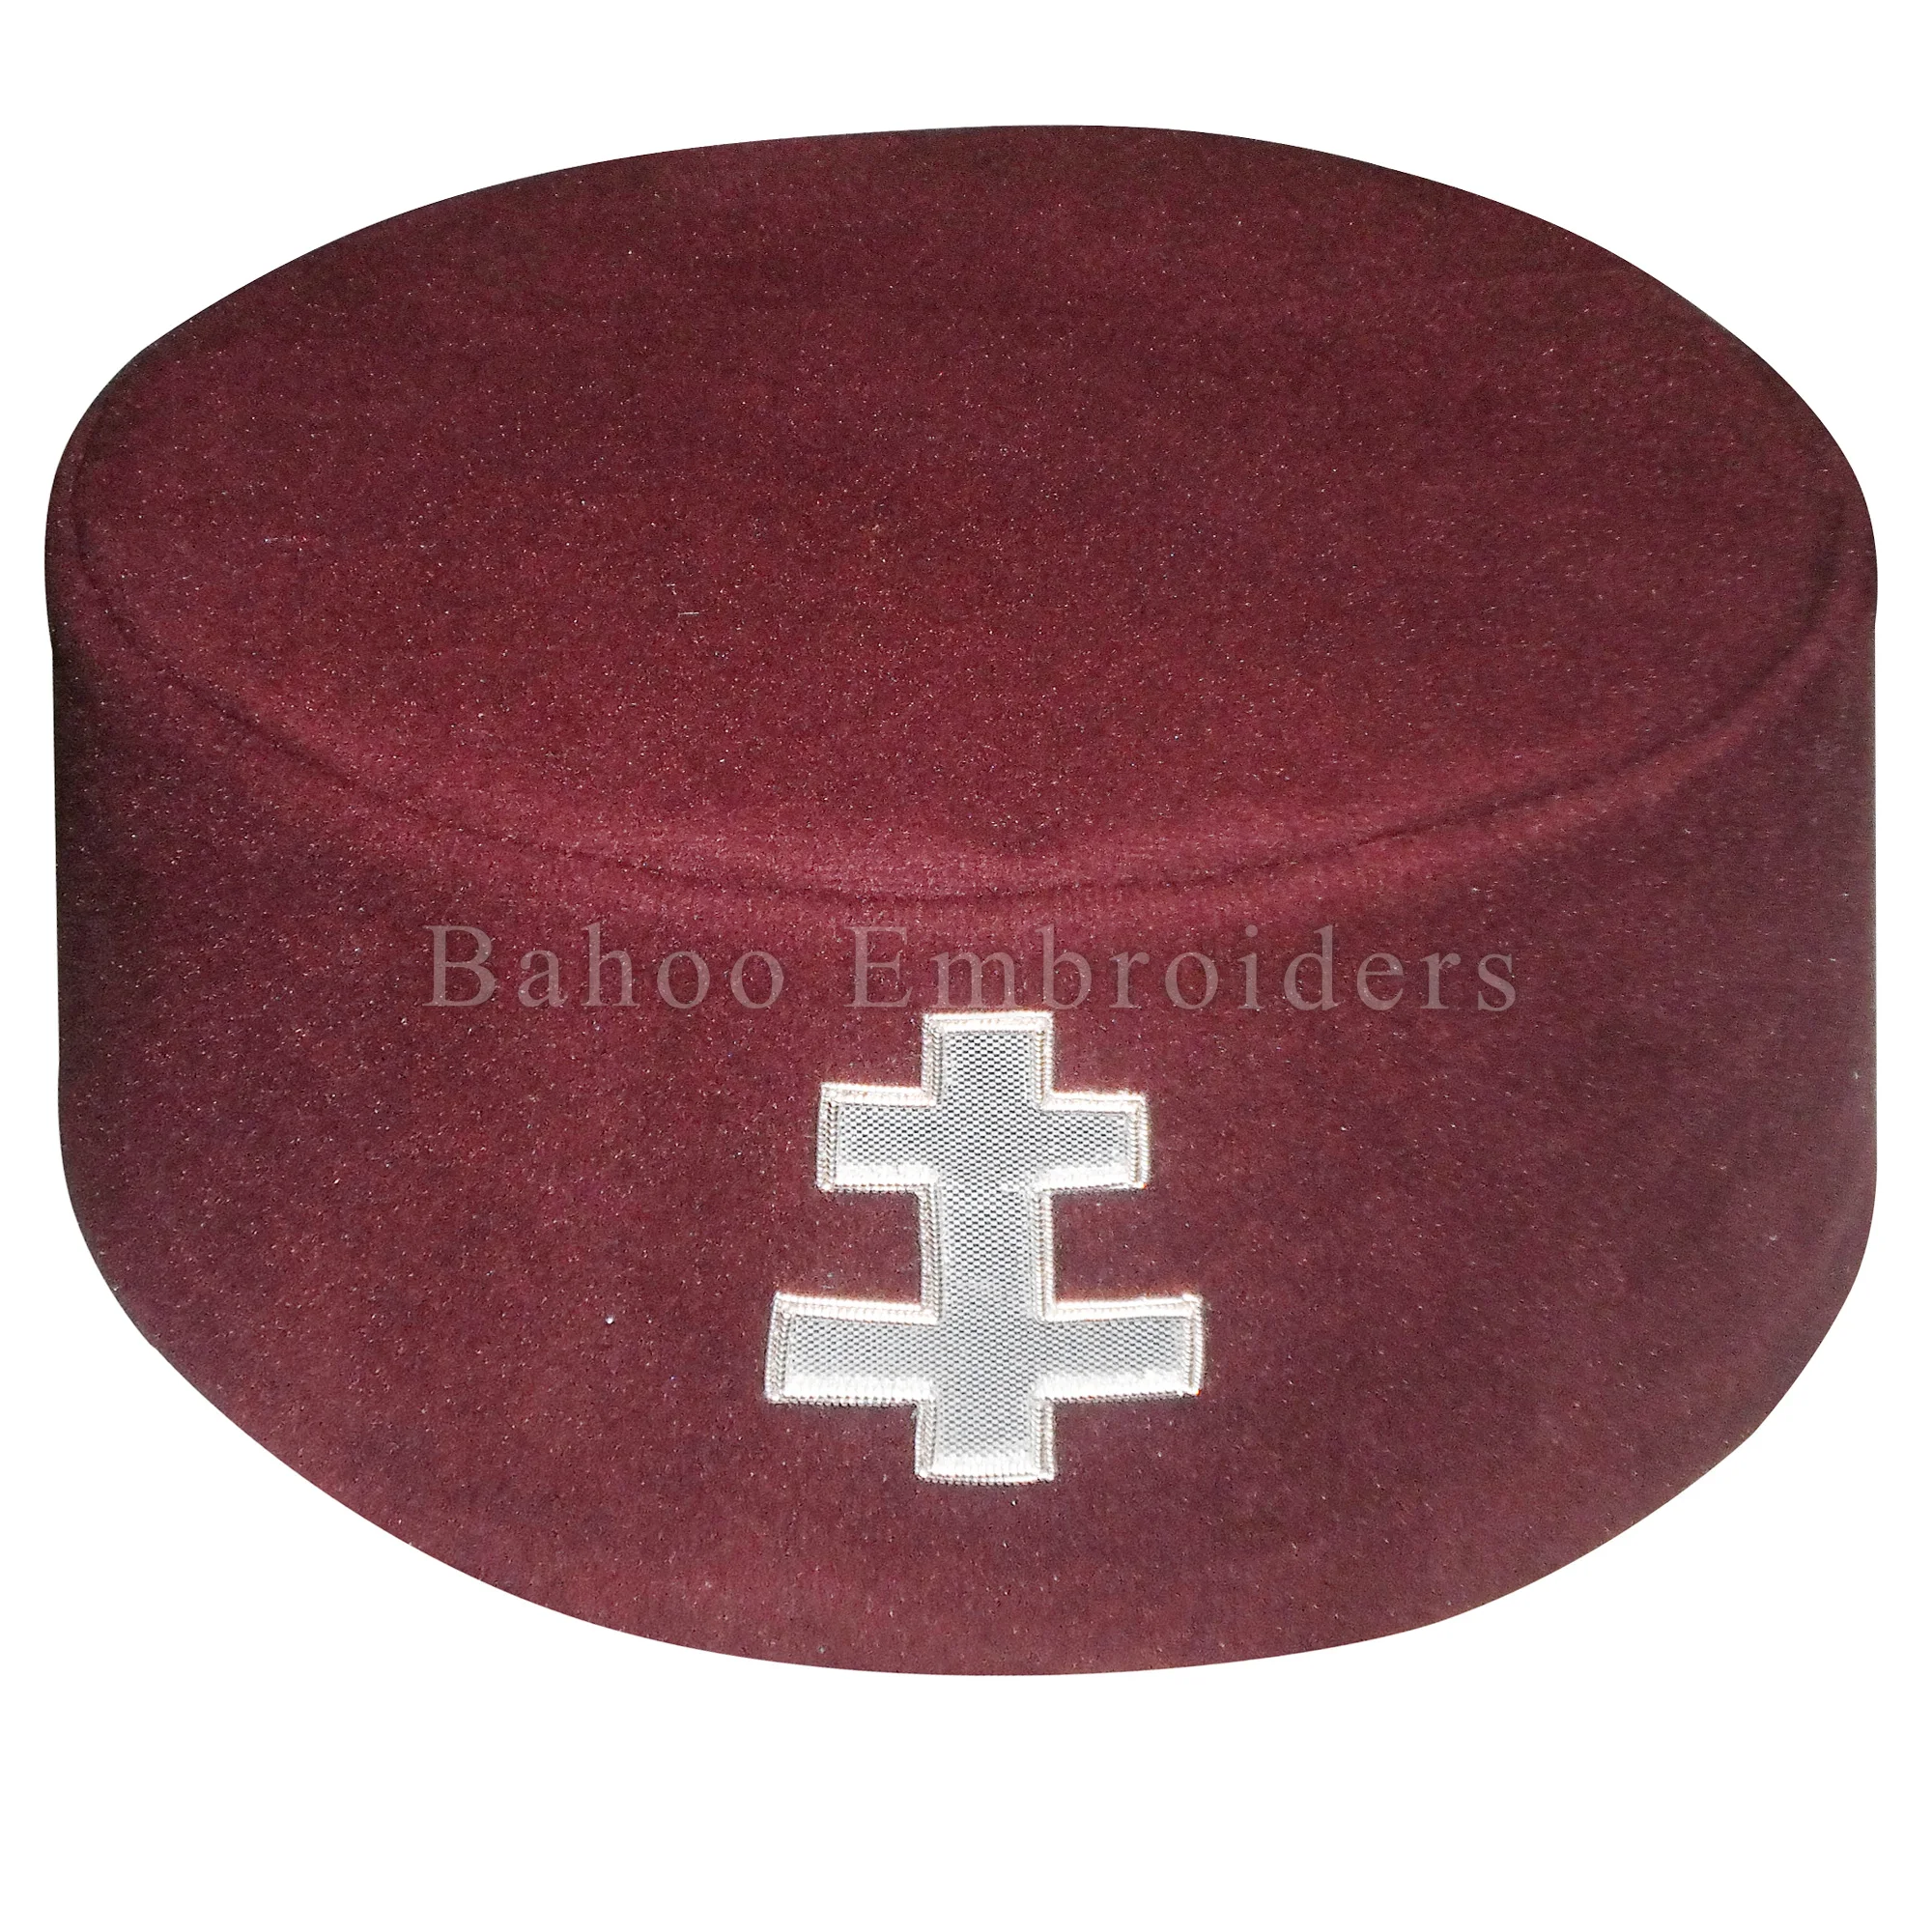 Masonic Knight Templar KT Preceptor Cap/Hat with Case